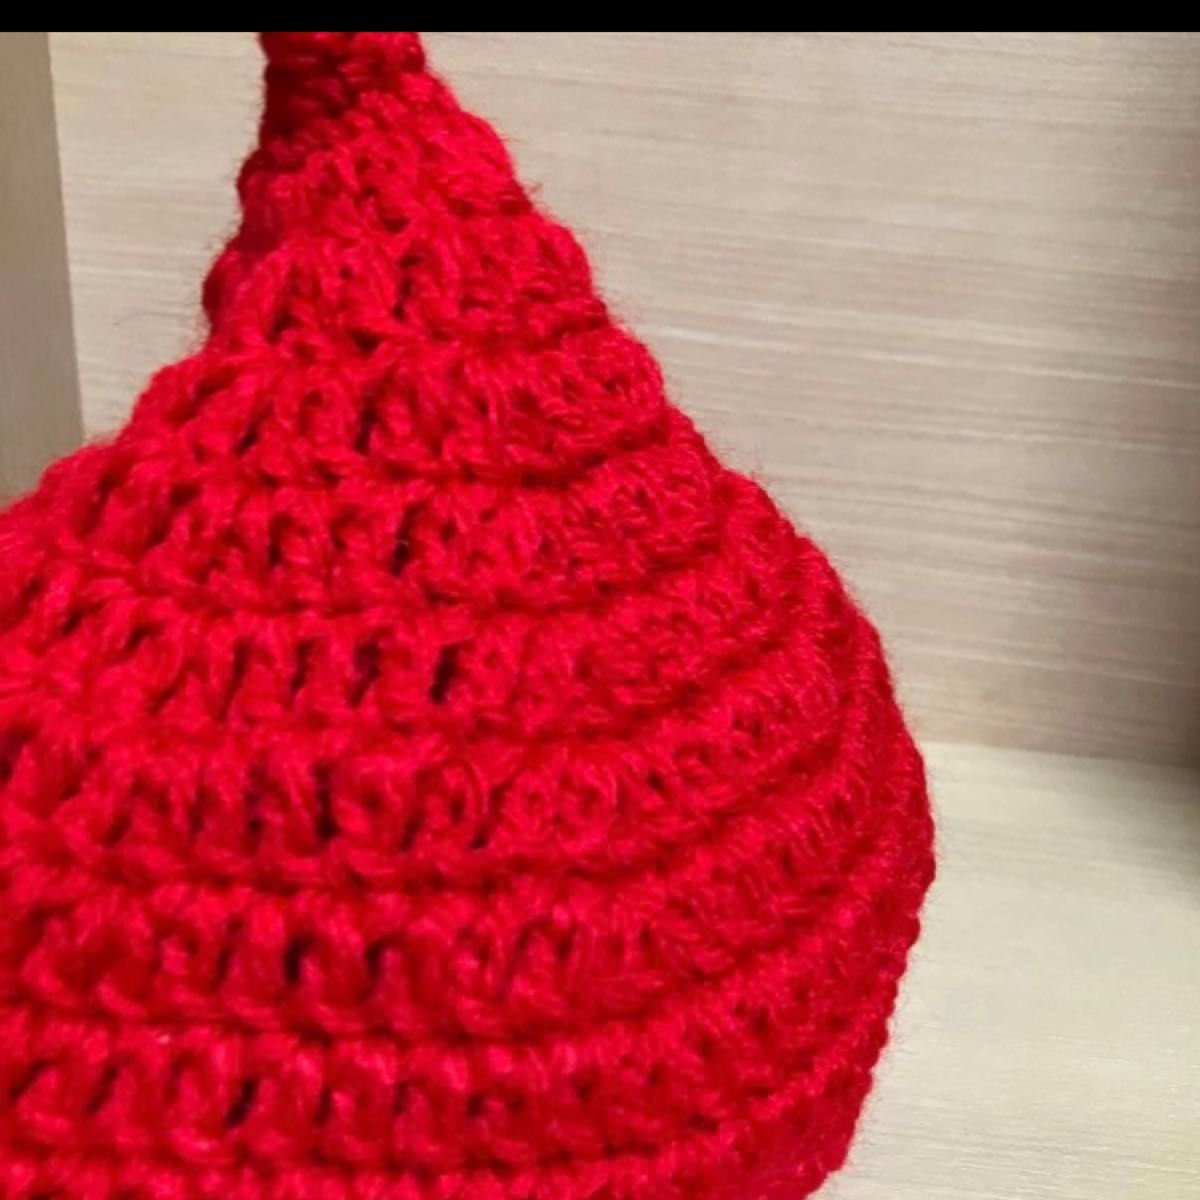 ハンドメイド、手編み、どんぐり帽、ピクミン風のふんわり暖かいアクリル100% ニット帽